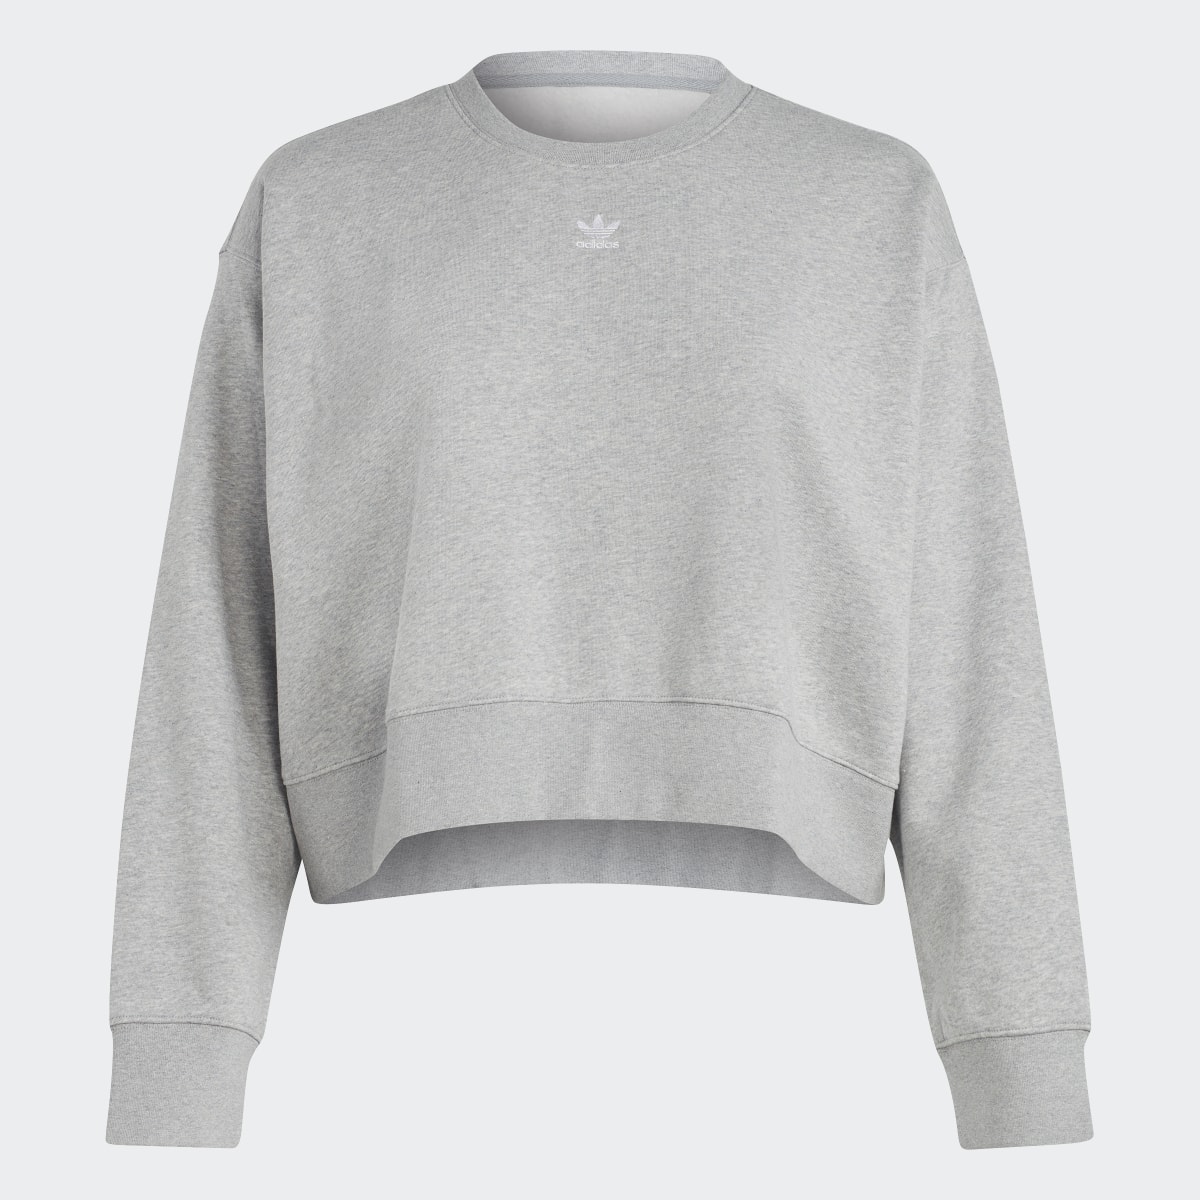 Adidas Adicolor Essentials Crew Sweatshirt (Plus Size). 5